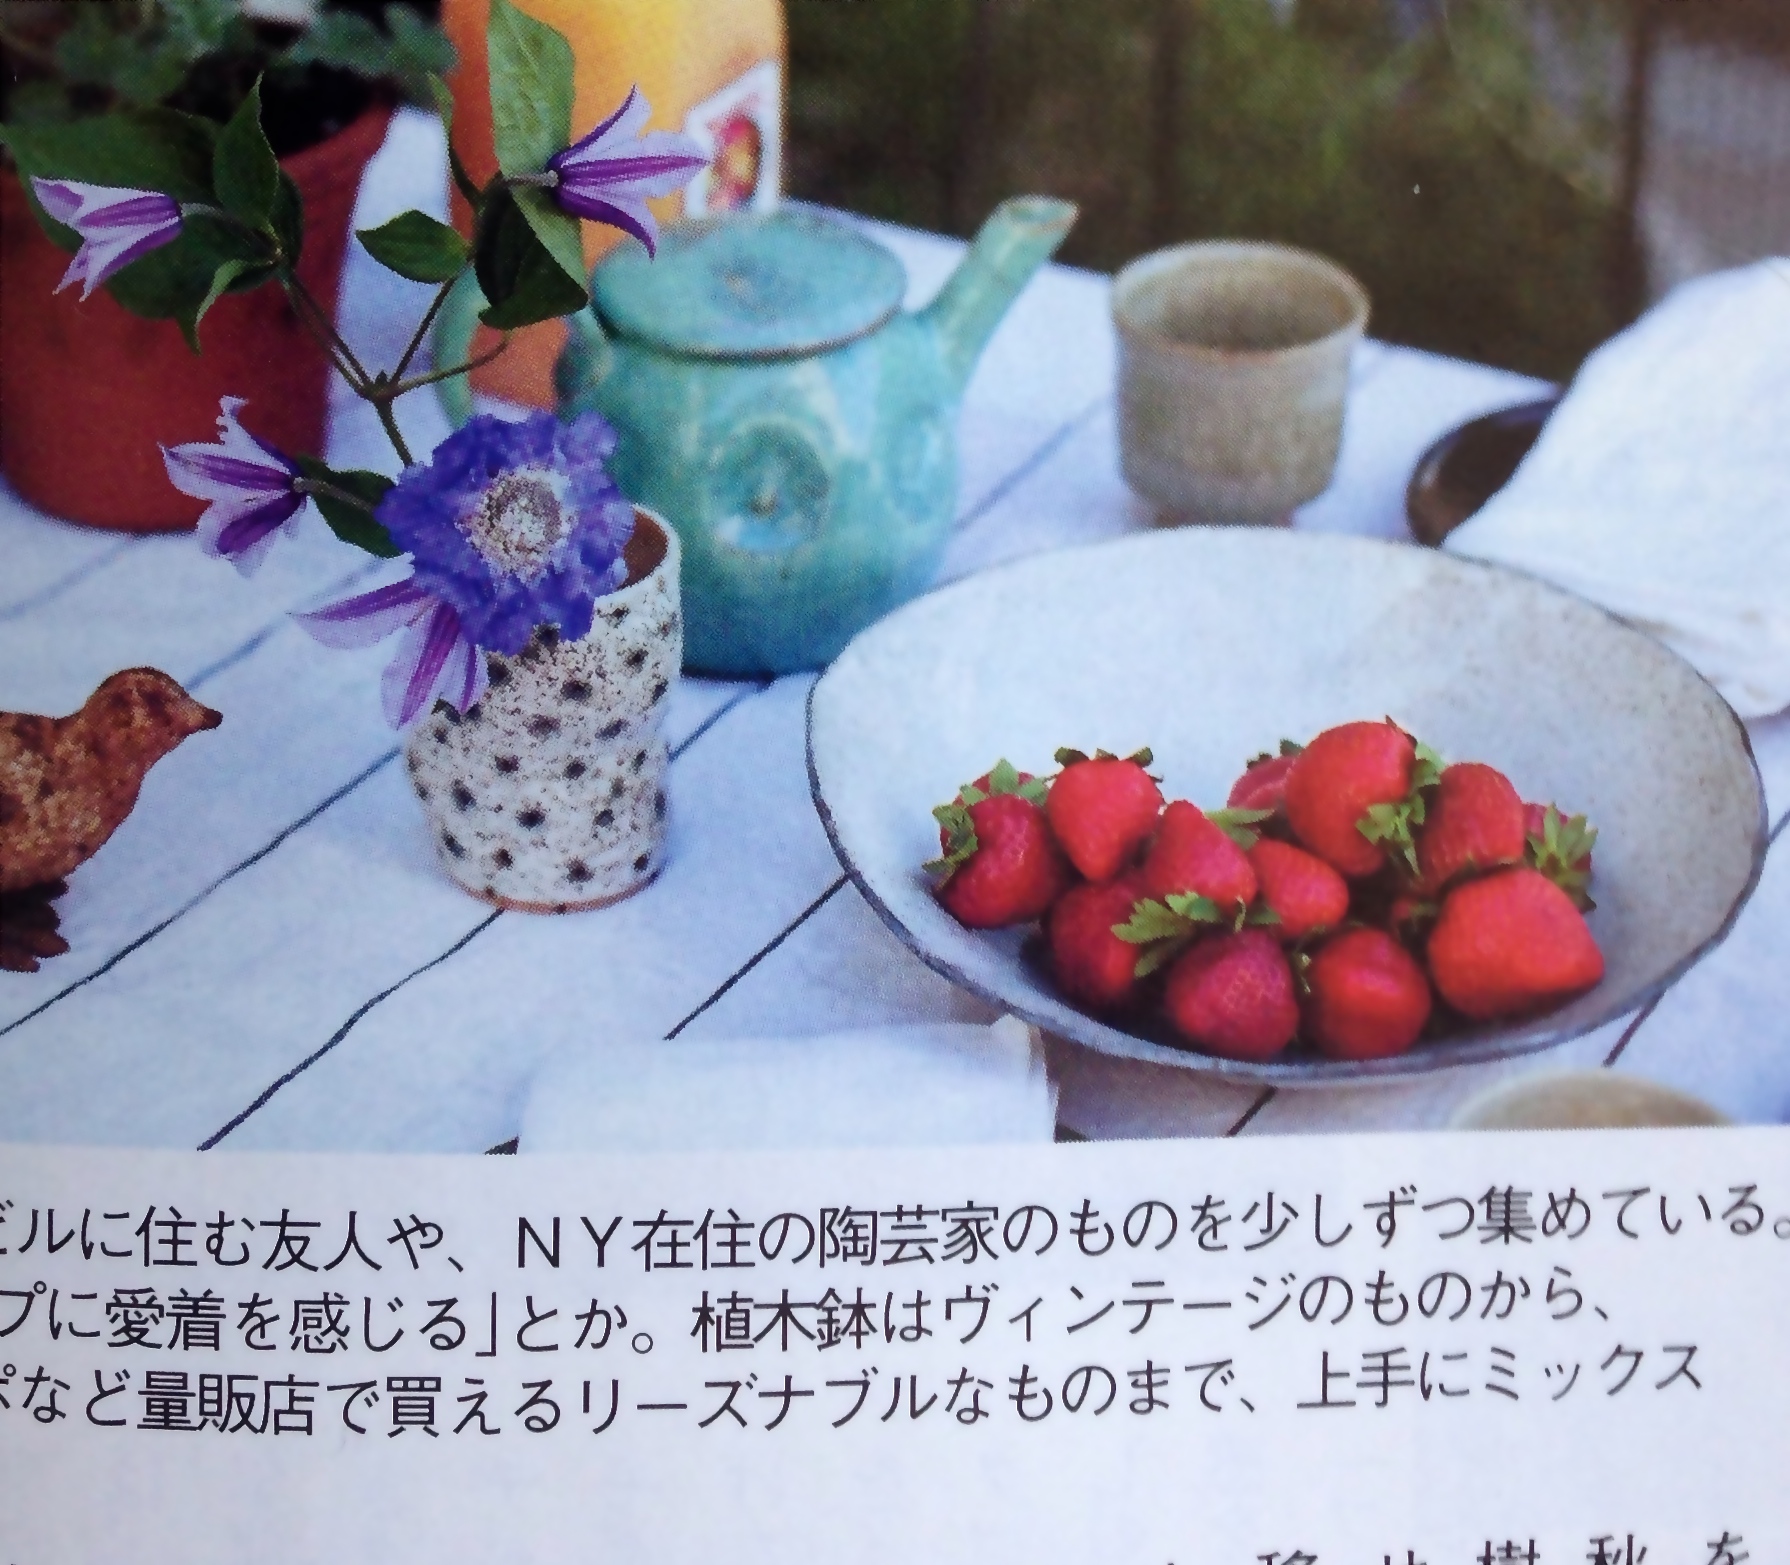   Spur magazine - Japan  